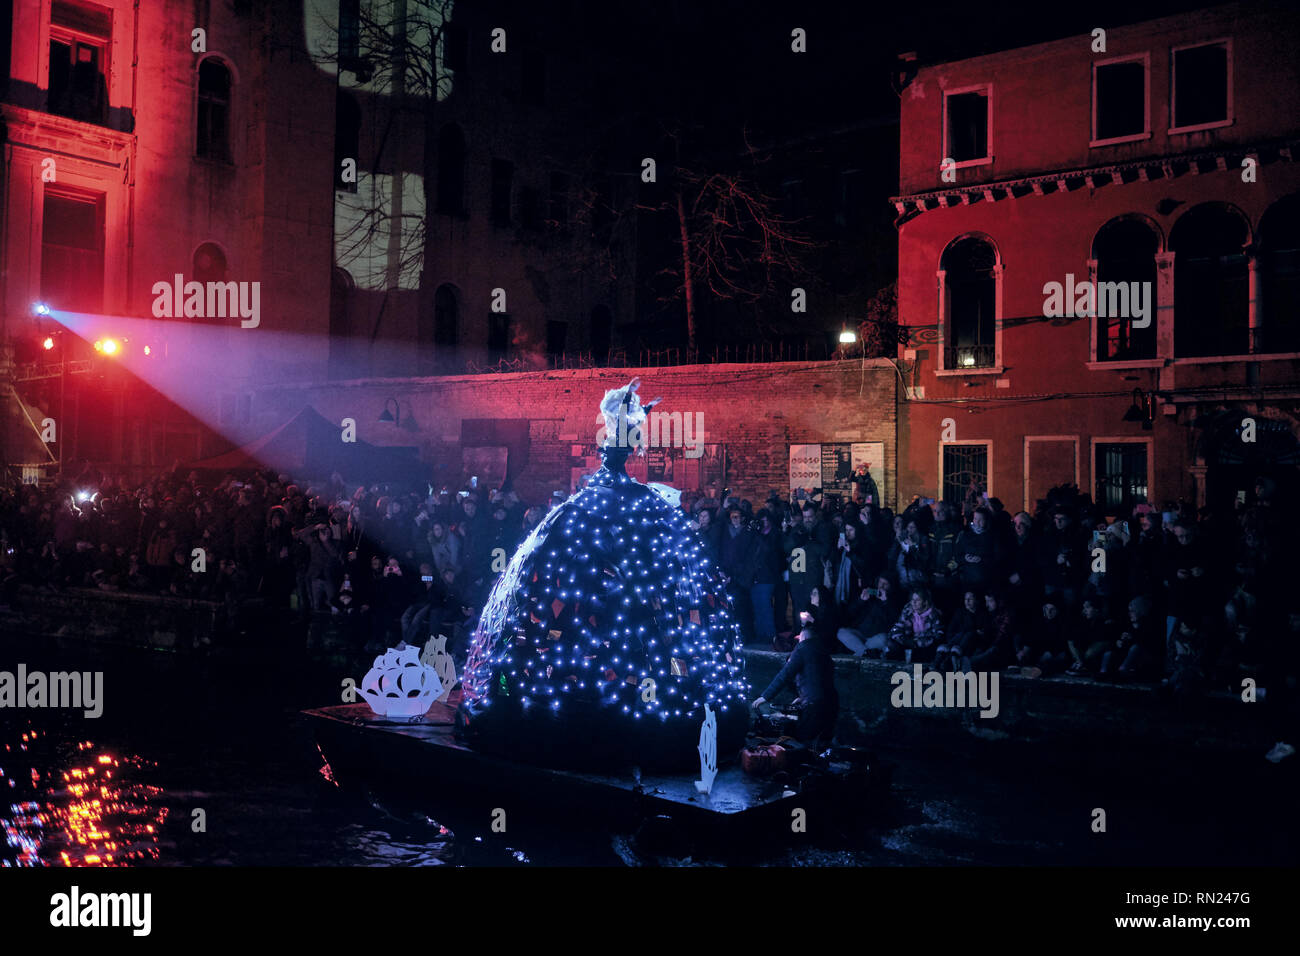 Venecia, Italia. 16 Feb 2019. Multitud de personas que celebraban la apertura del Carnaval de Venecia. Bailarín con un traje iluminado en el desfile de agua. Crédito: Genciana Polovina/Alamy Live News Foto de stock